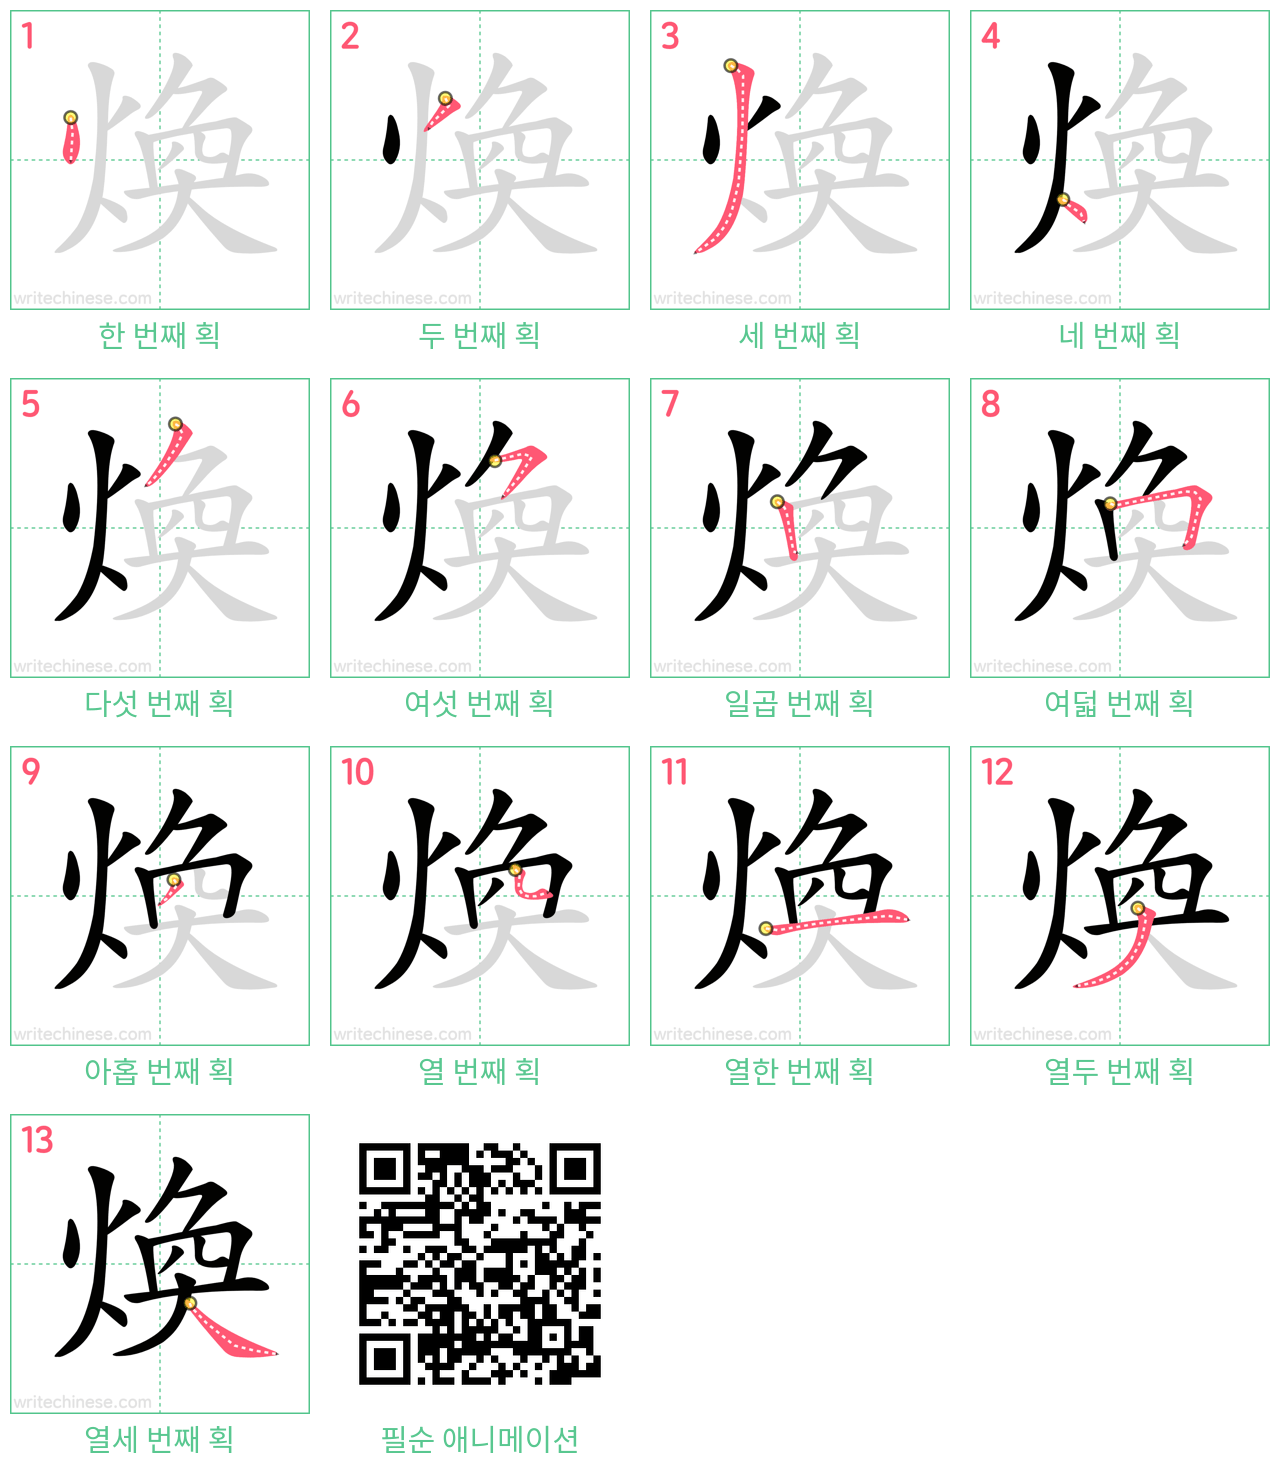 煥 step-by-step stroke order diagrams